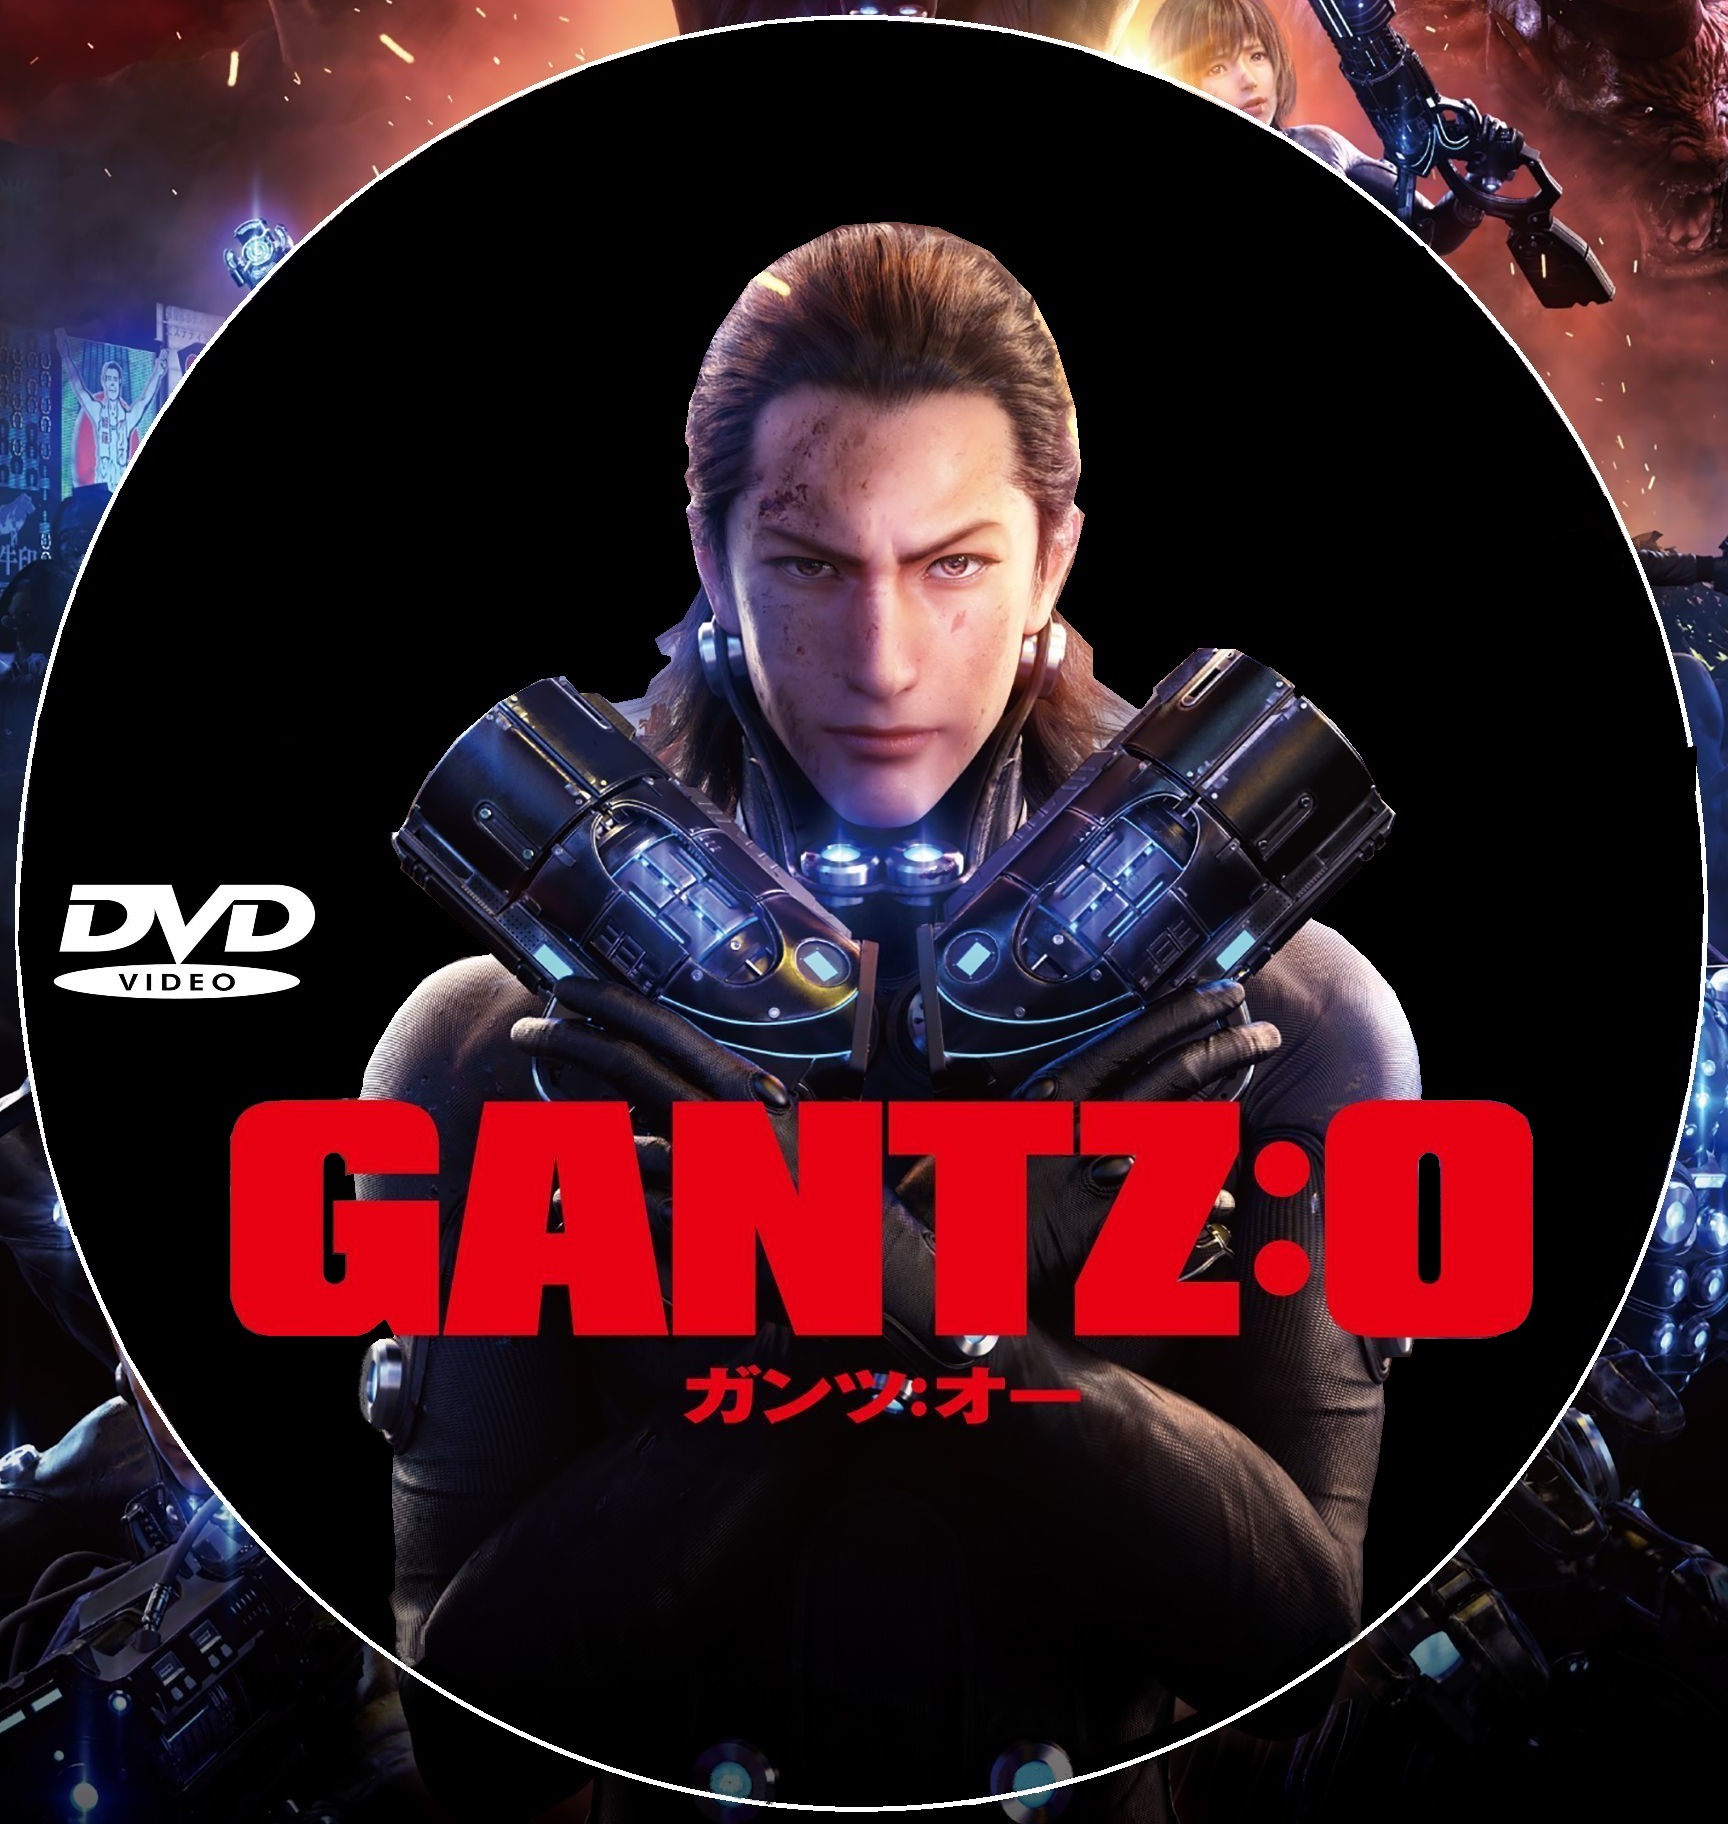 Gantz 0 custom